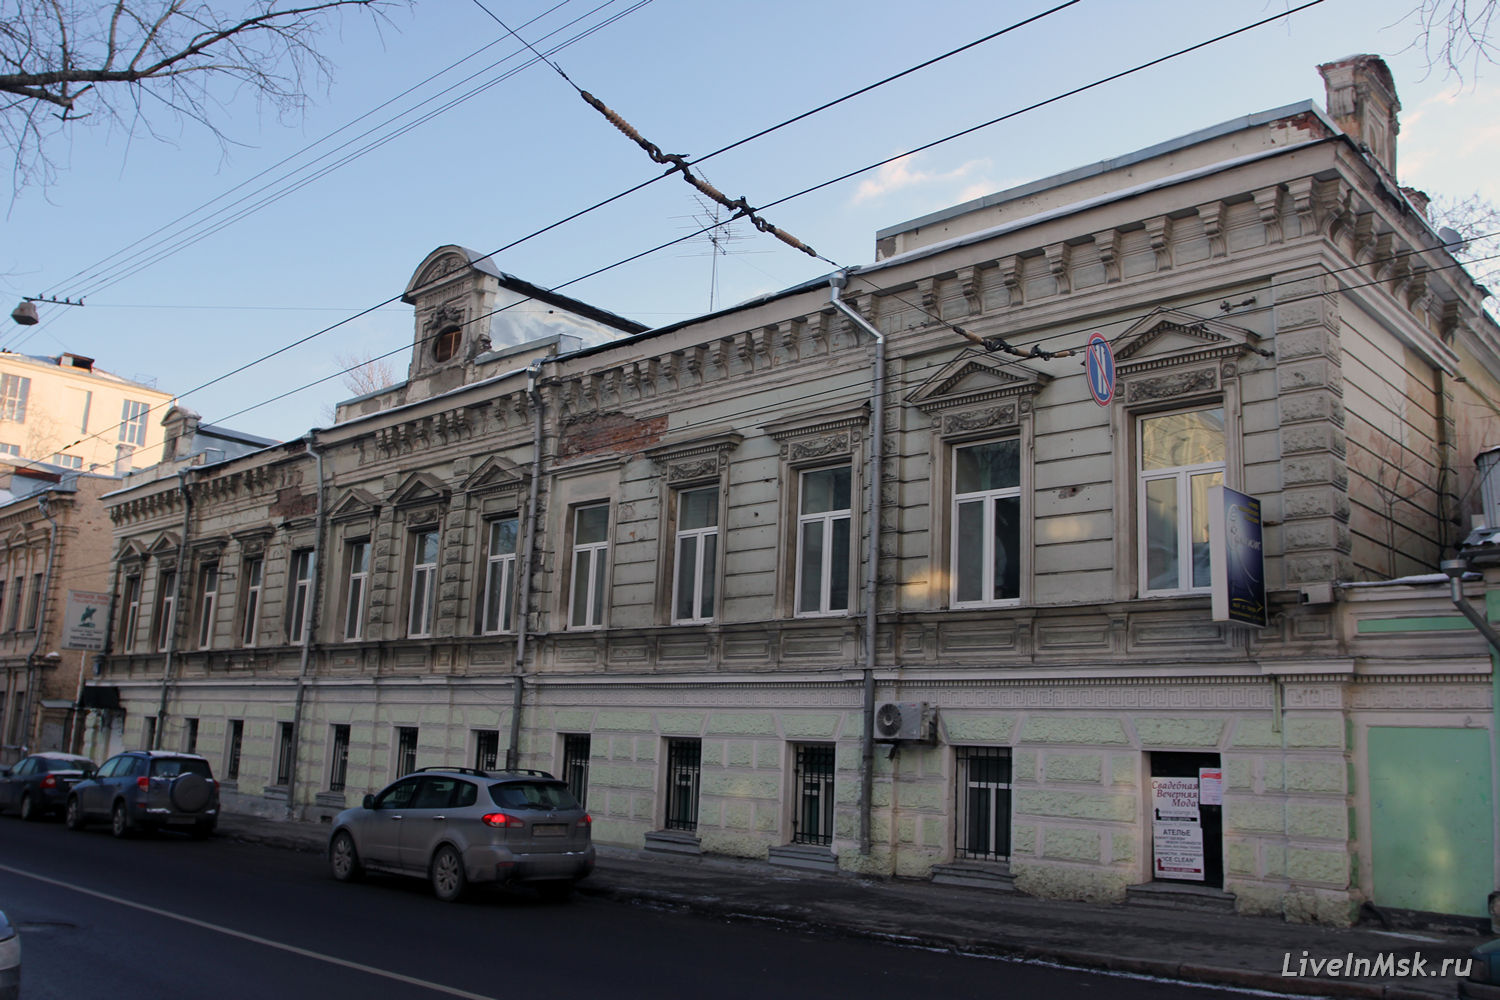 Усадьба Варенцовых — Штеккер — Голицына, фото 2014 года